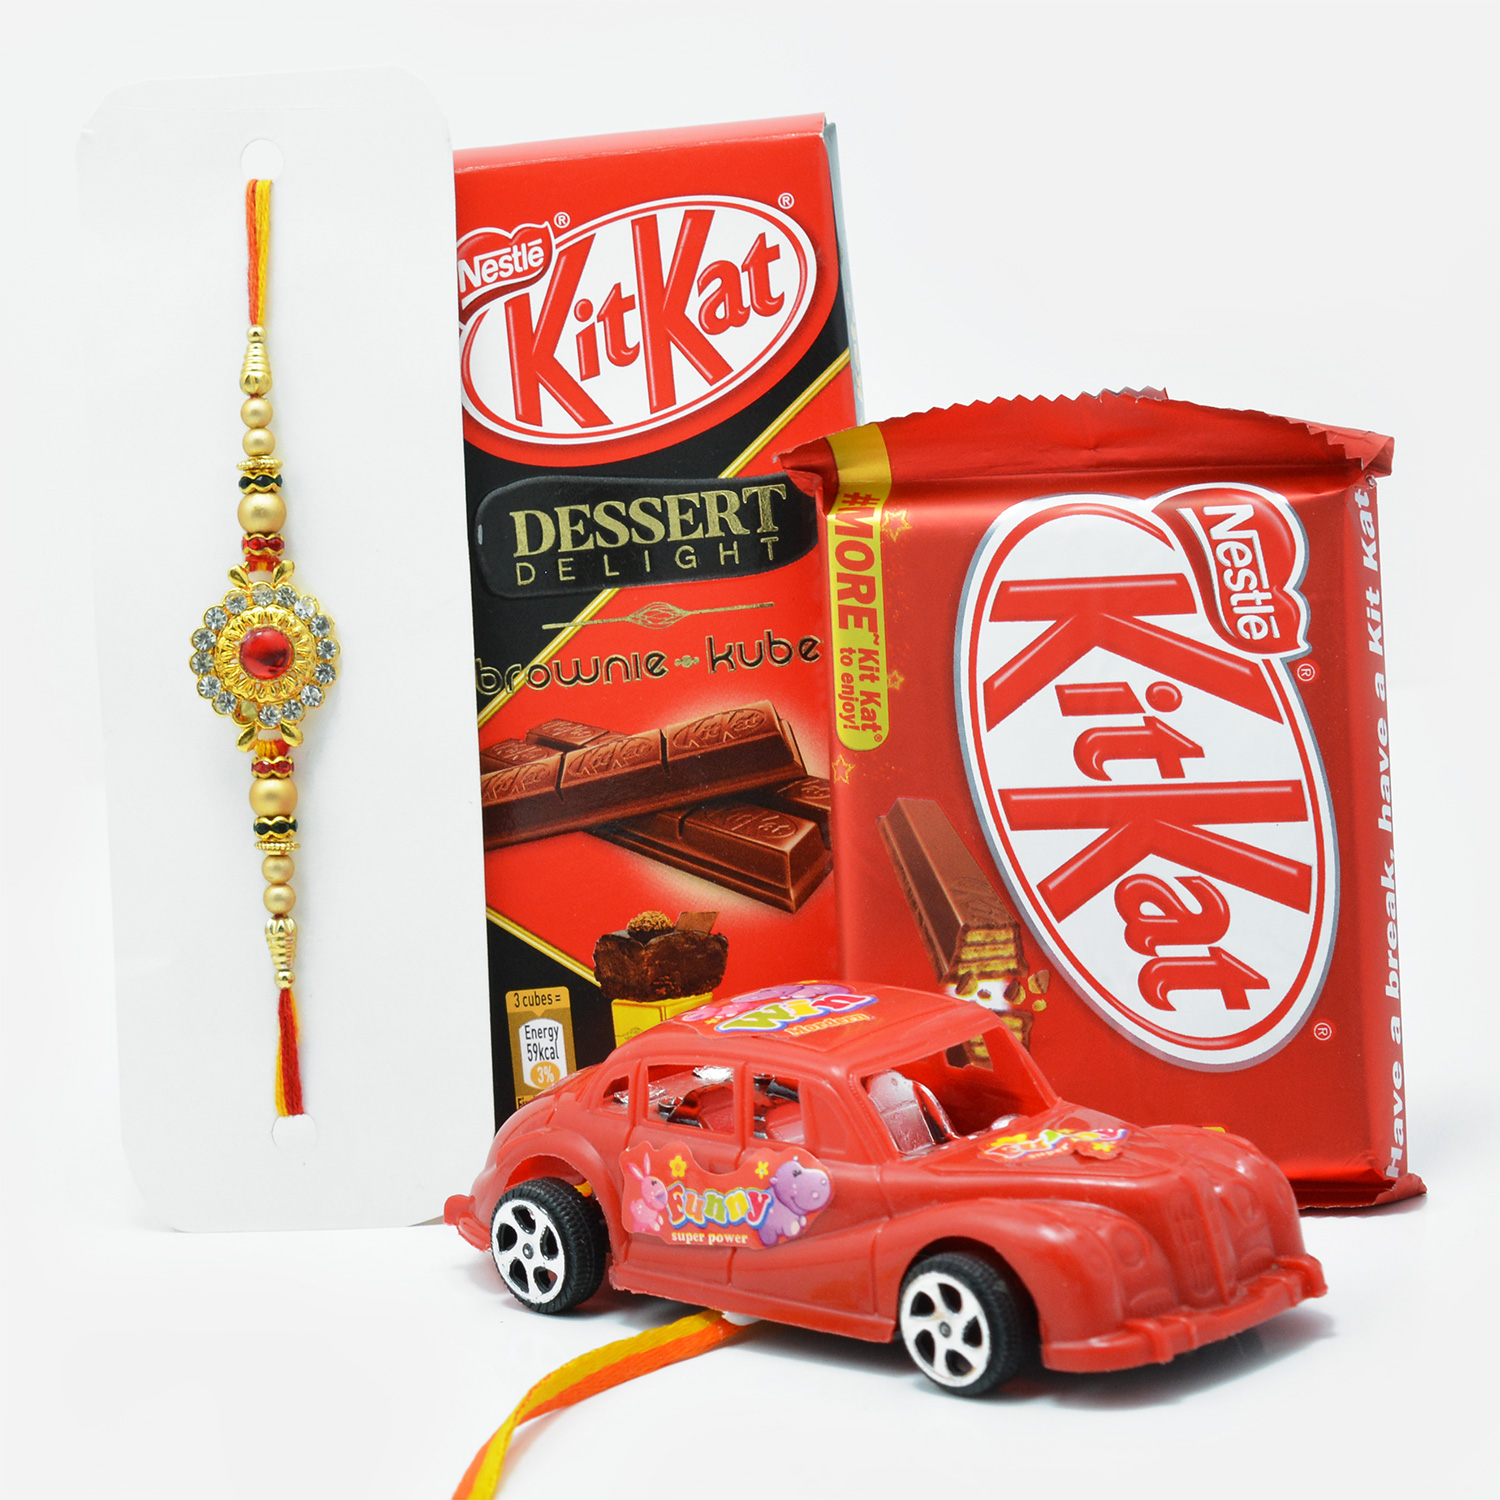 Car Kids Rakhi and Golden Bhaiya Rakhi Set of 2 with Kit-Kat Chocolates